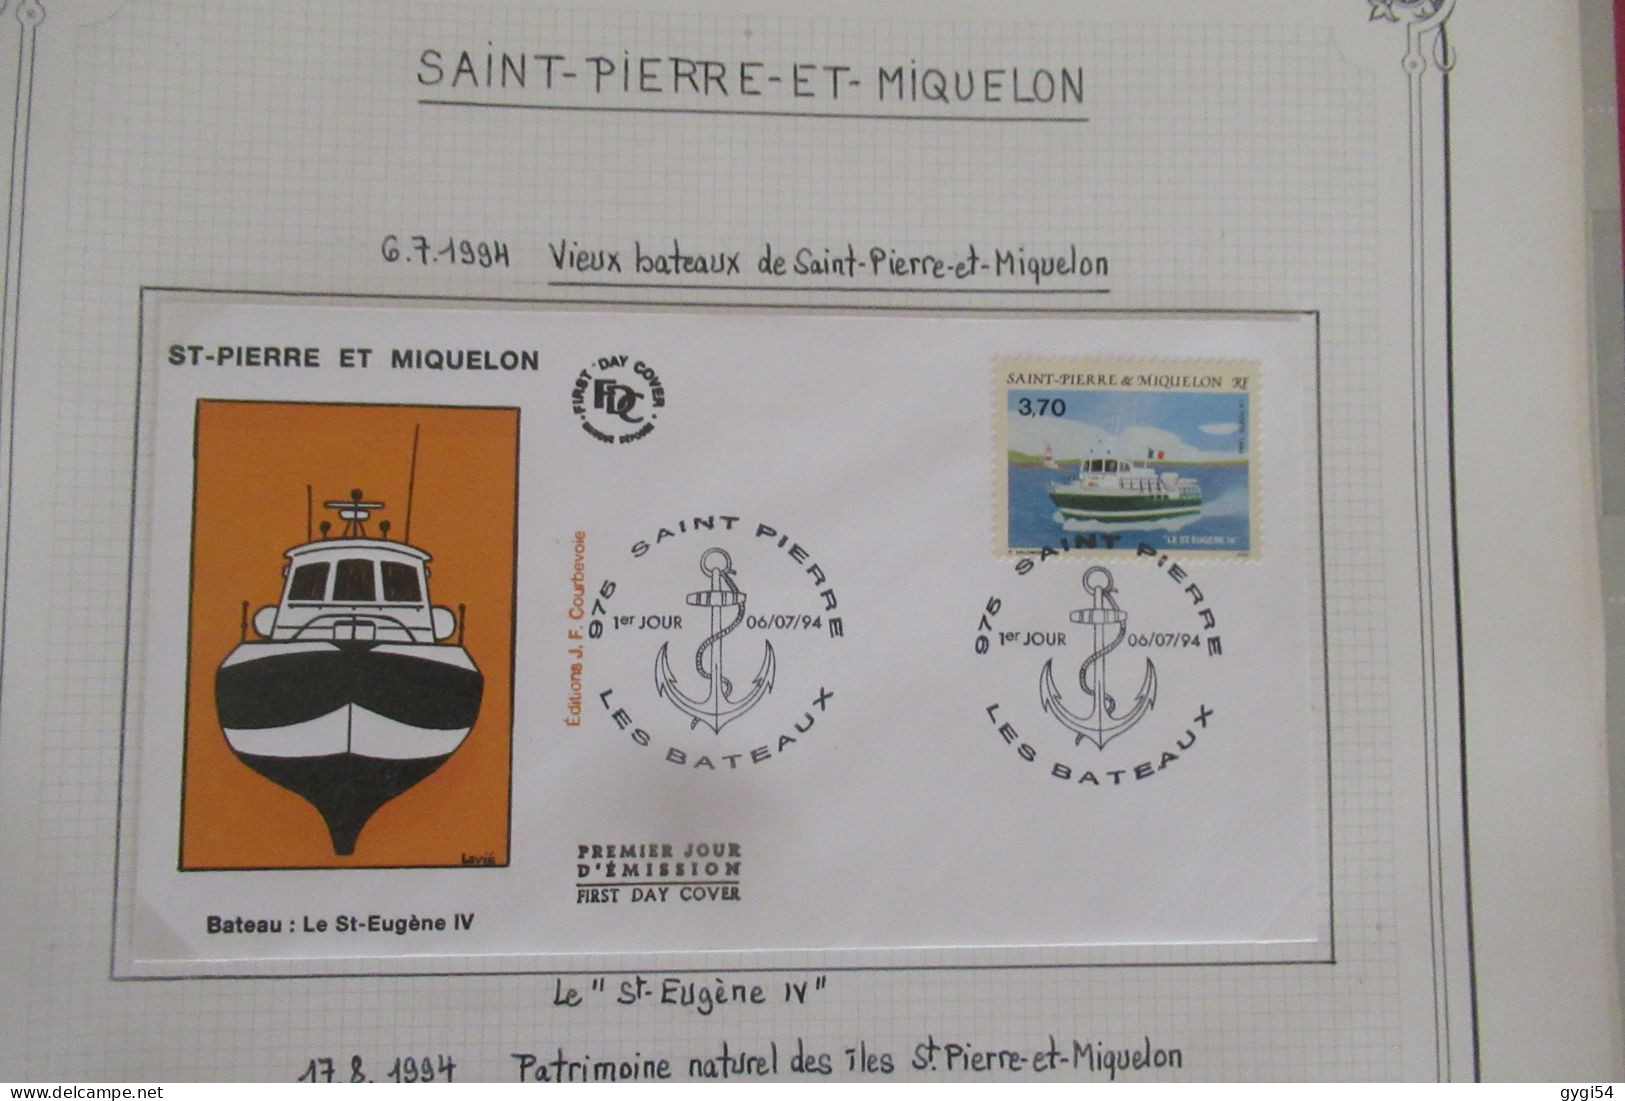 Saint-Pierre et Miquelon FDC   1994